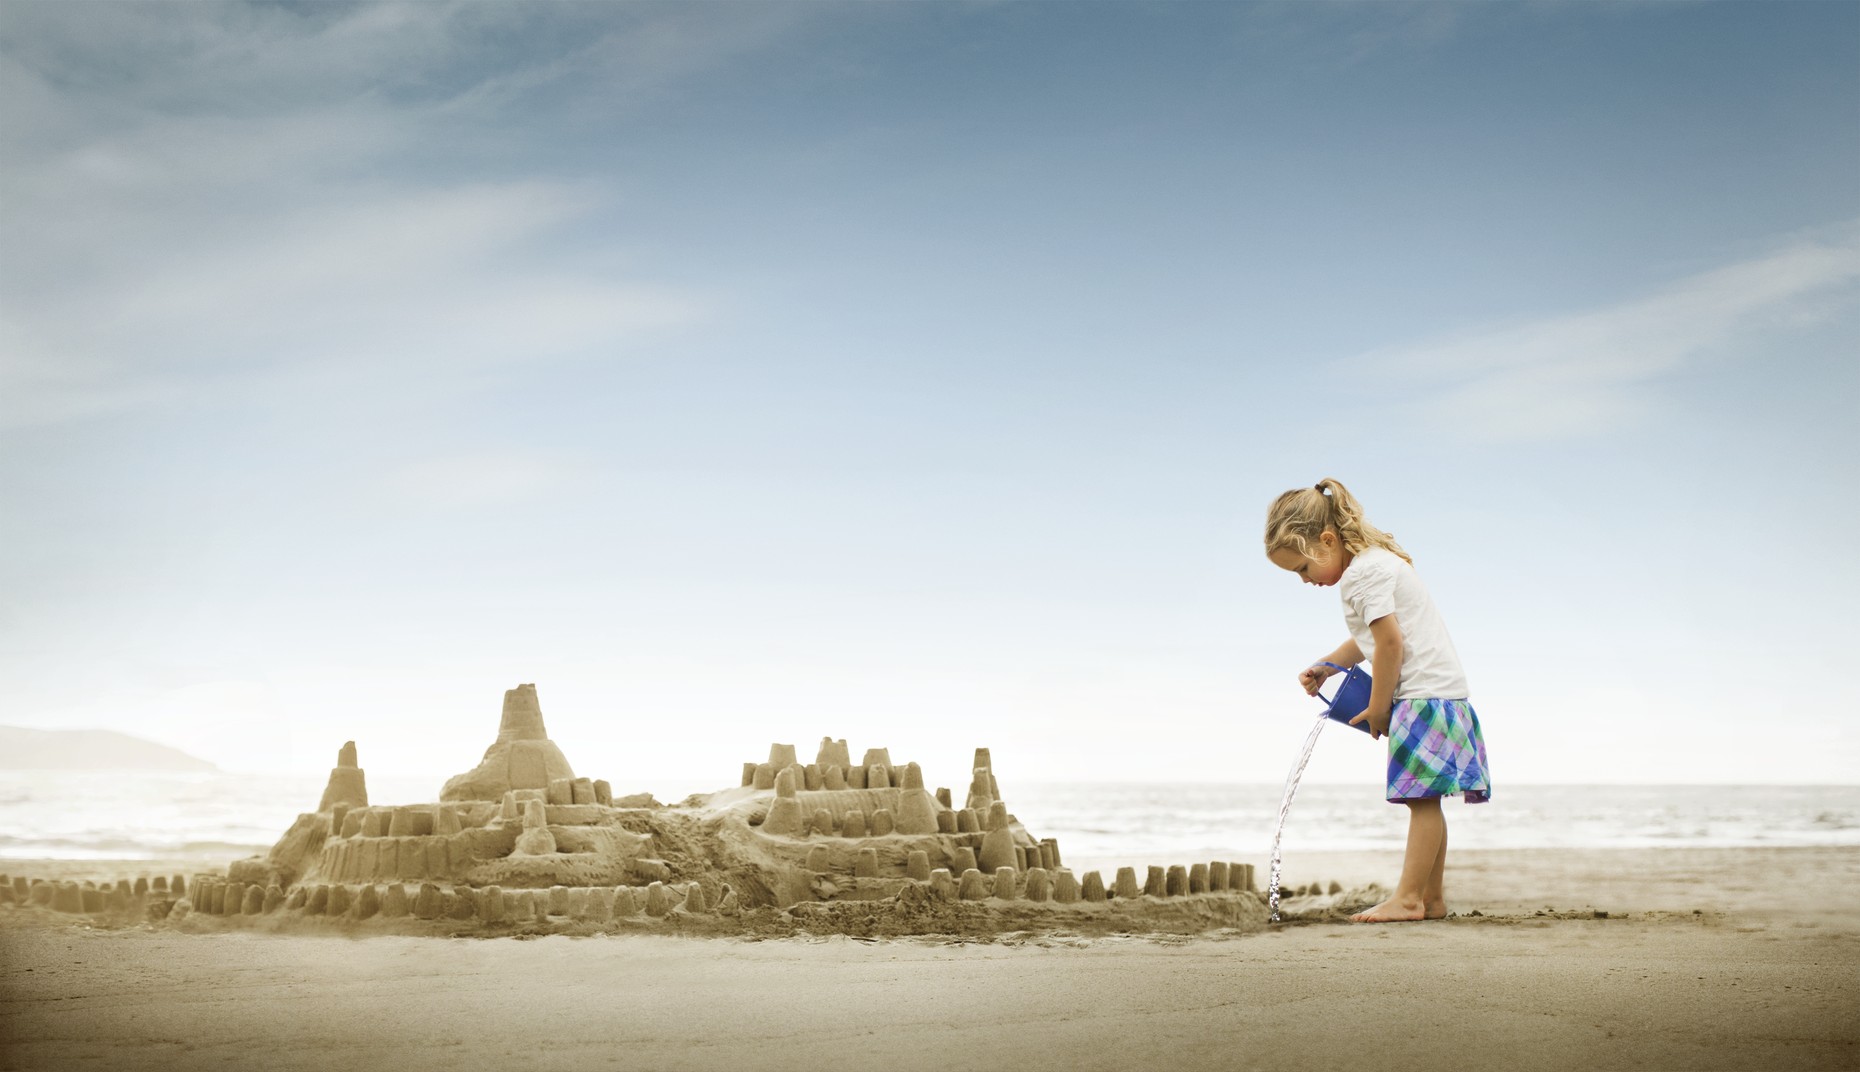 Фотография моря с детьми и песочным замком